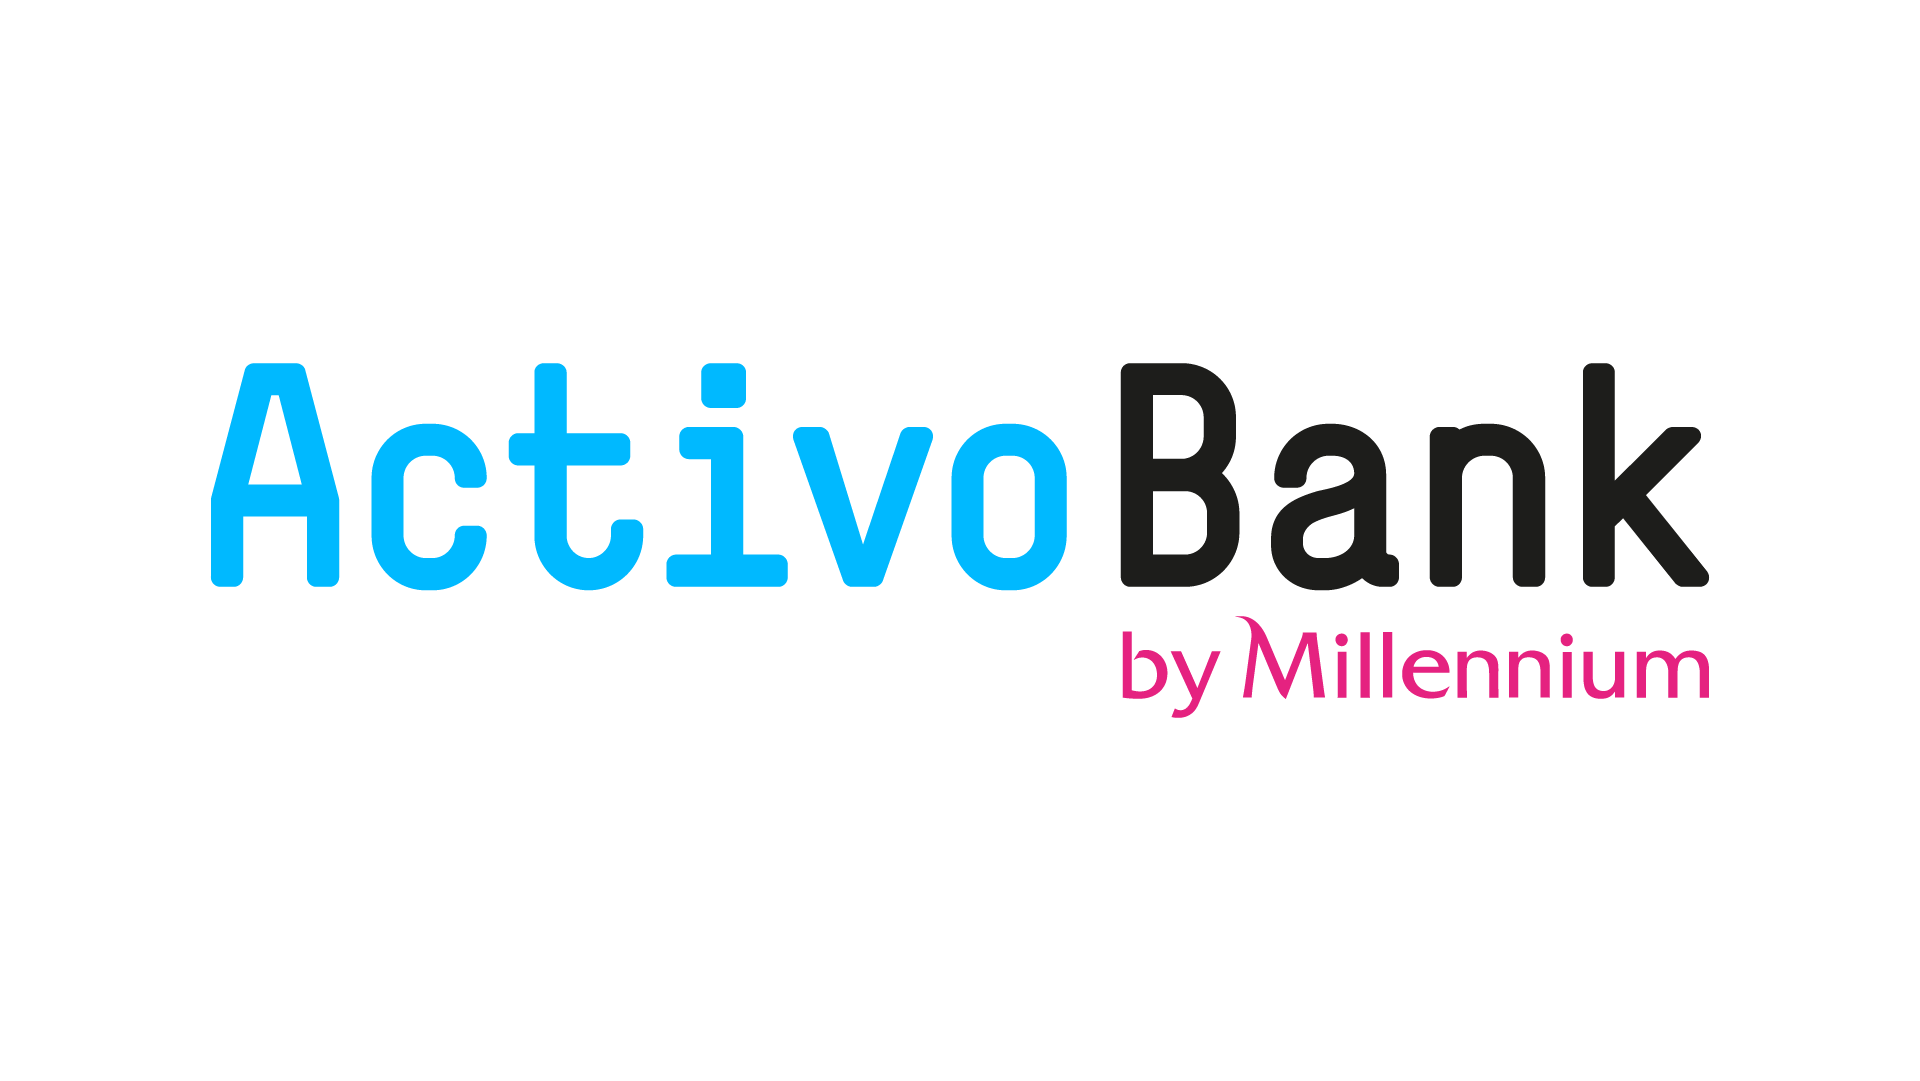 Conheça a conta digital ActivoBank